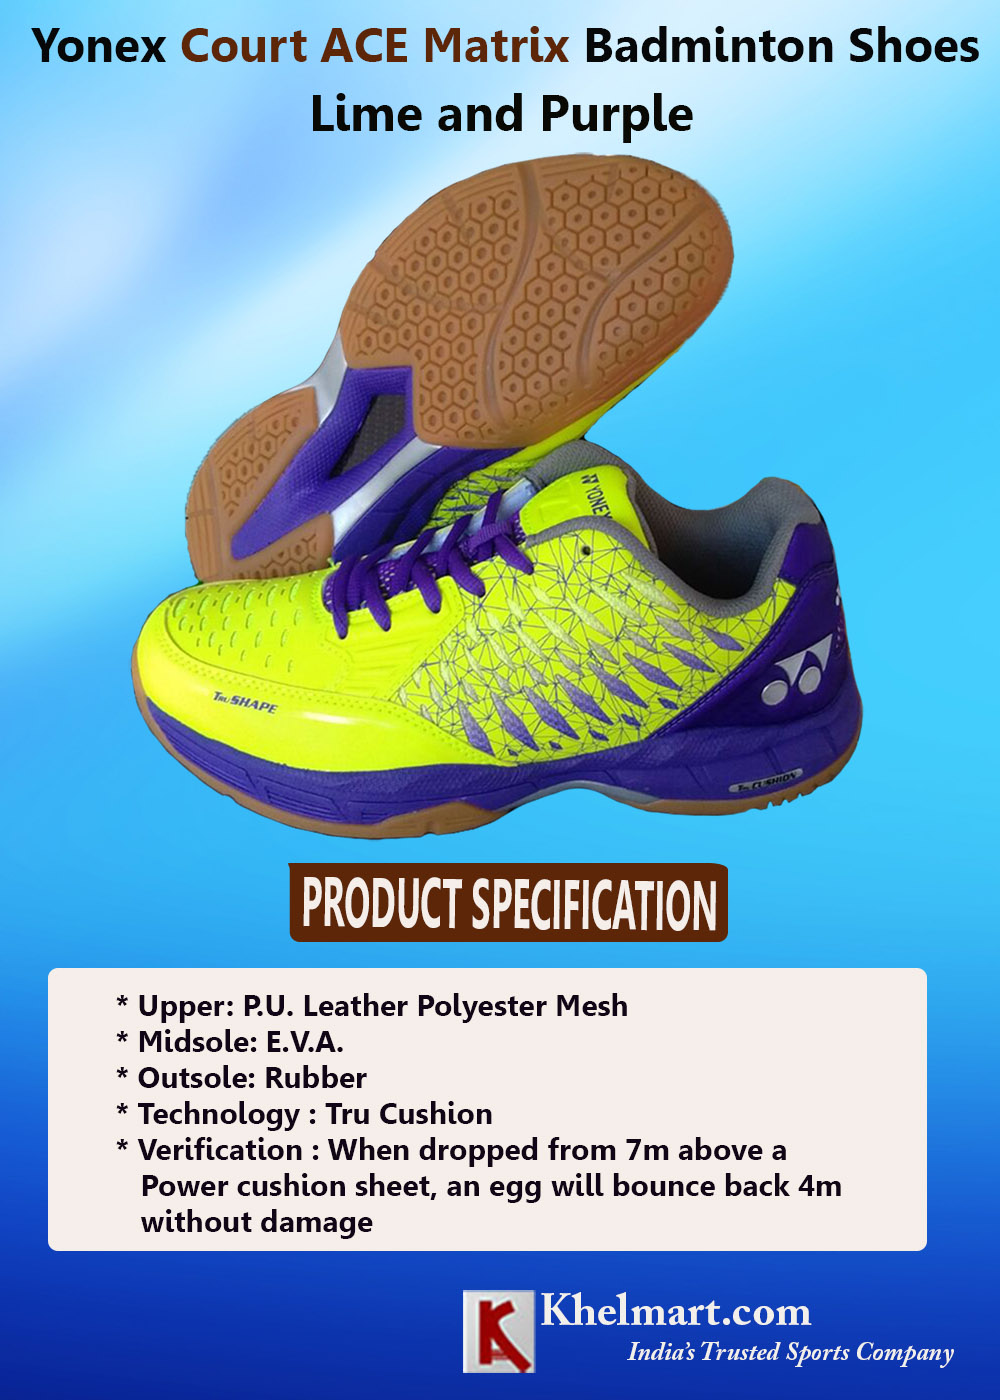 Yonex-Court-ACE-Matrix-Badminton-Shoes-Lime-and-Purple_2.jpg